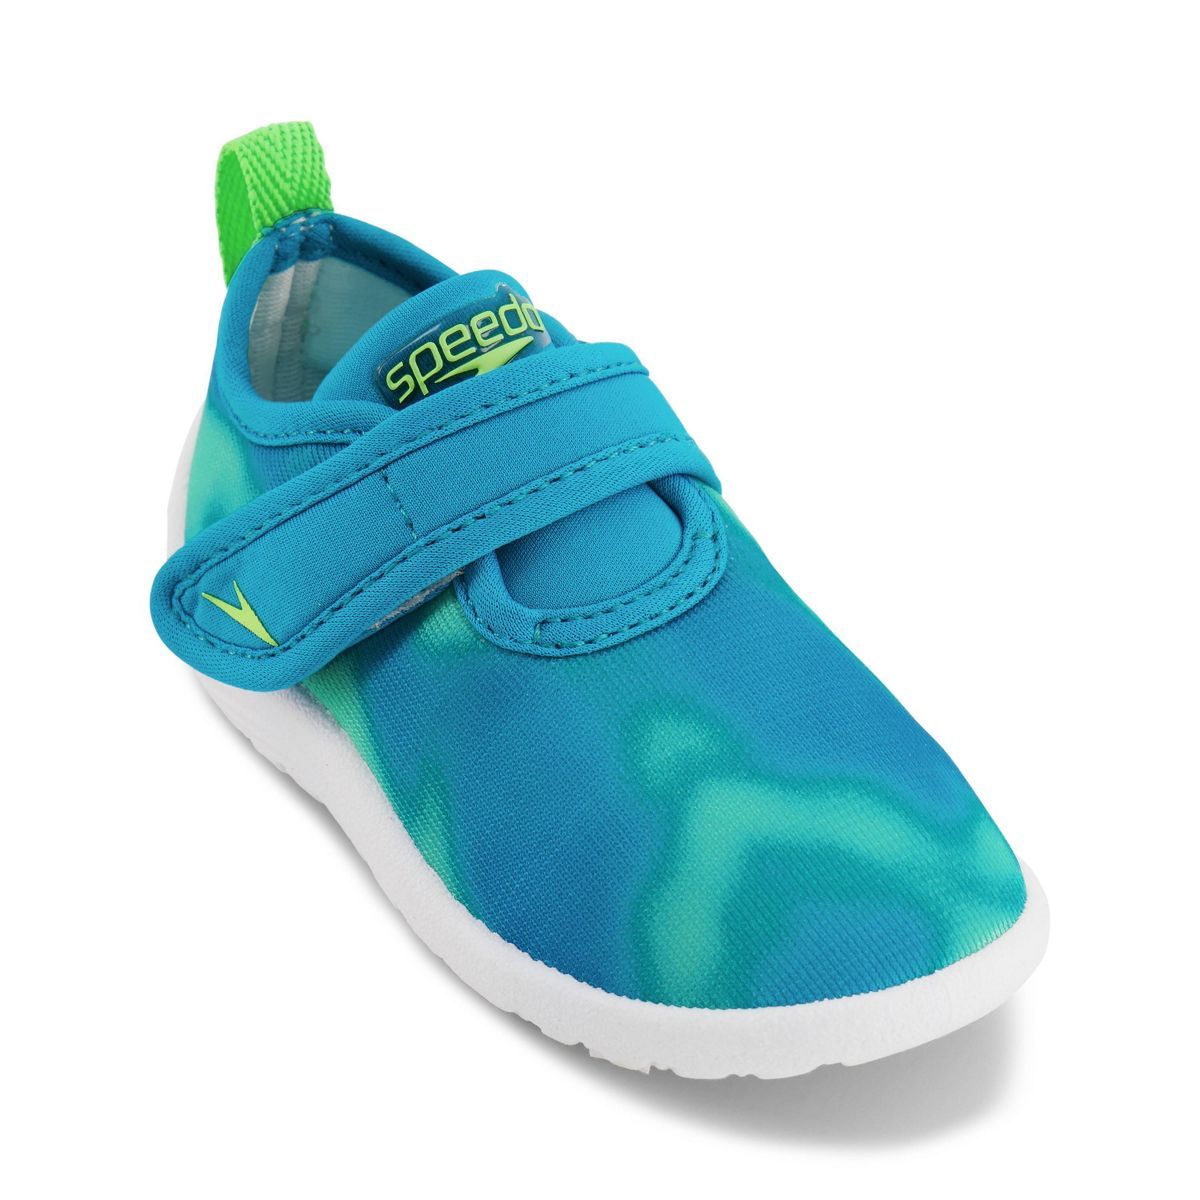 Speedo Toddler Printed Shore Explorer Water Shoes - Teal 9-10 | Target